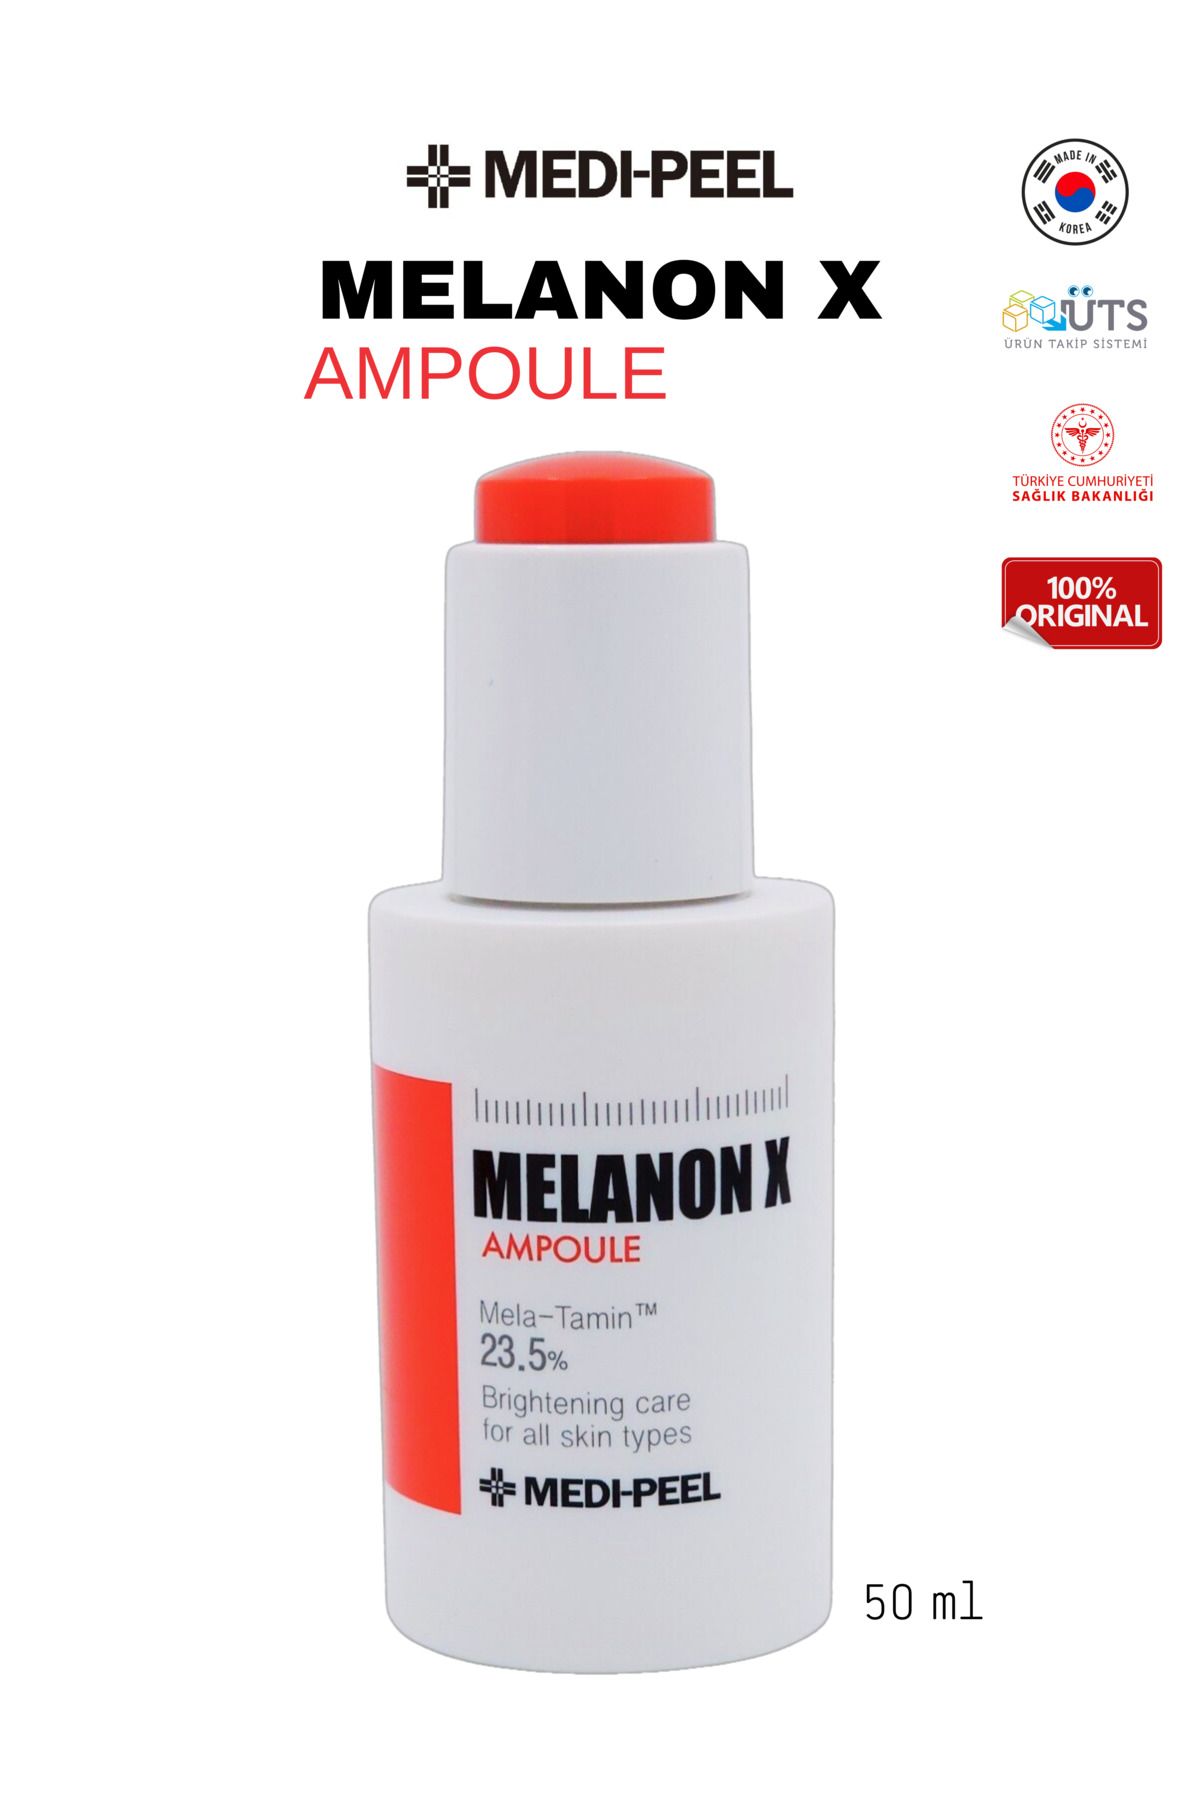 Medipeel Medi-peel Melanon X Ampoule Lekeli Ciltler Için Cilt Bakım Serumu 50 ml